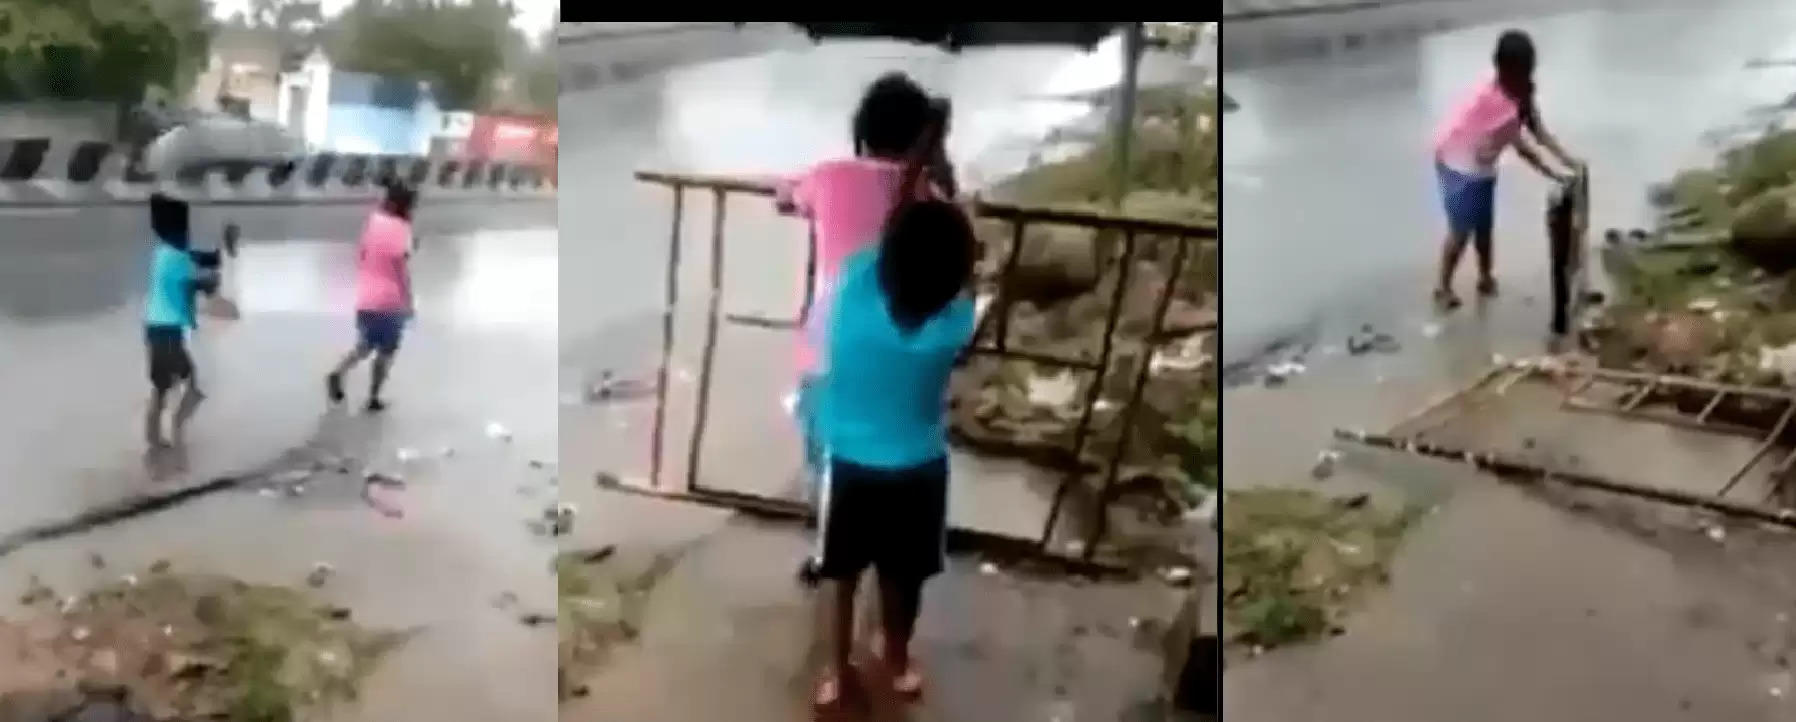 பெரிய விபத்தைத் தடுக்க சிறுமி செய்த செயல் –  வைரலாகும் வீடியோ! #ViralVideo